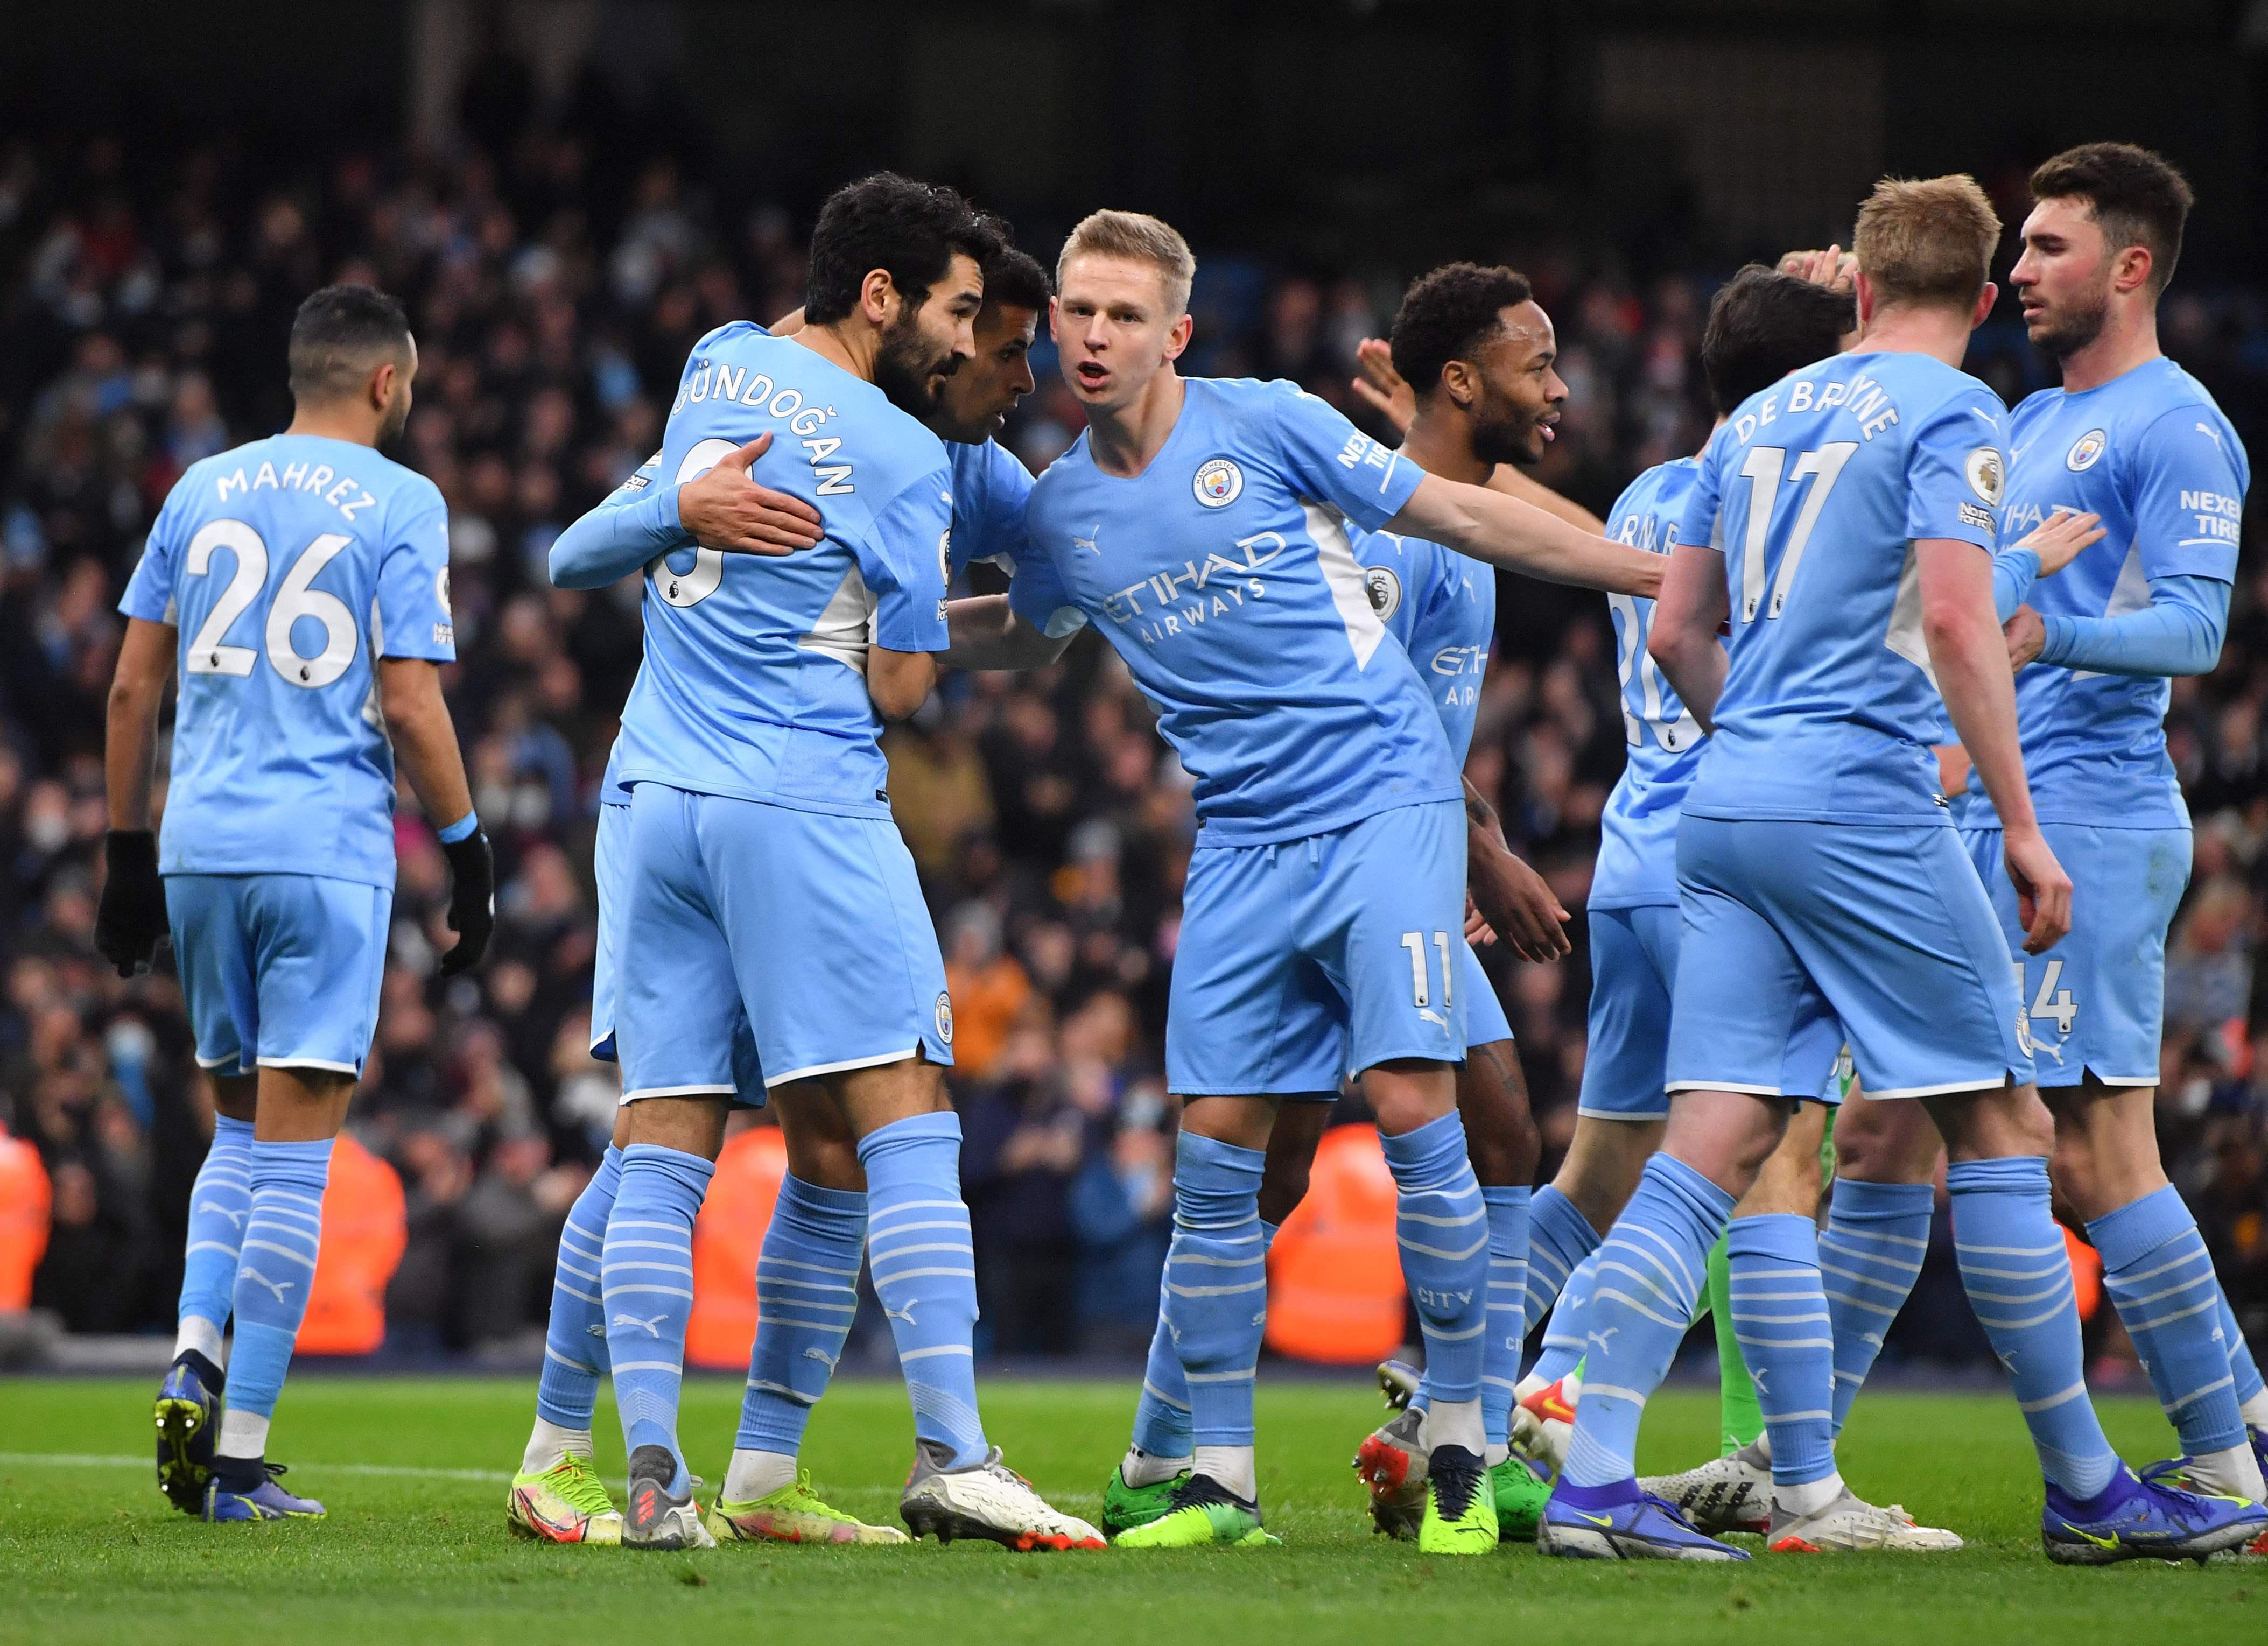 (ÖZET) Manchester City-Leicester City maç sonucu: 6-3